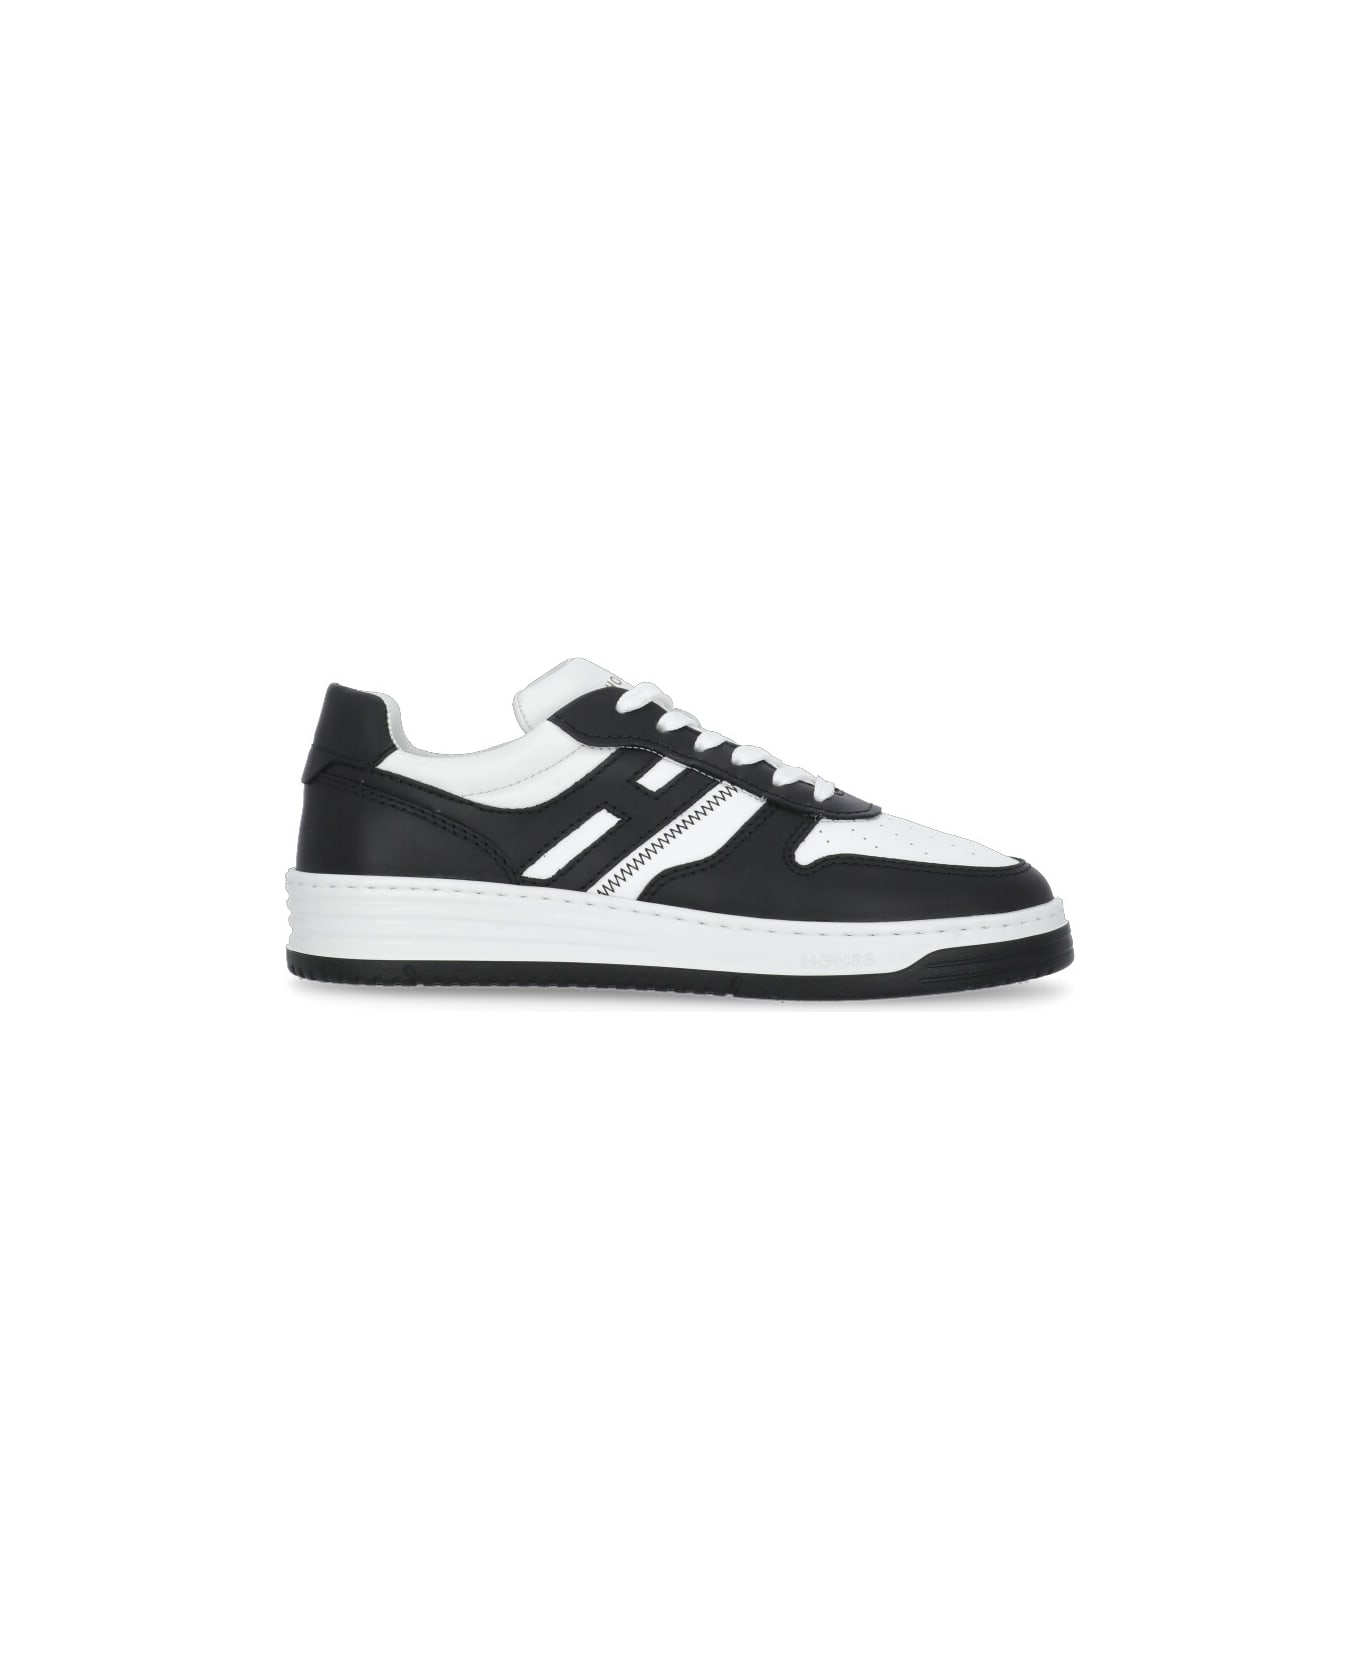 Hogan H630 Sneakers - White/black スニーカー